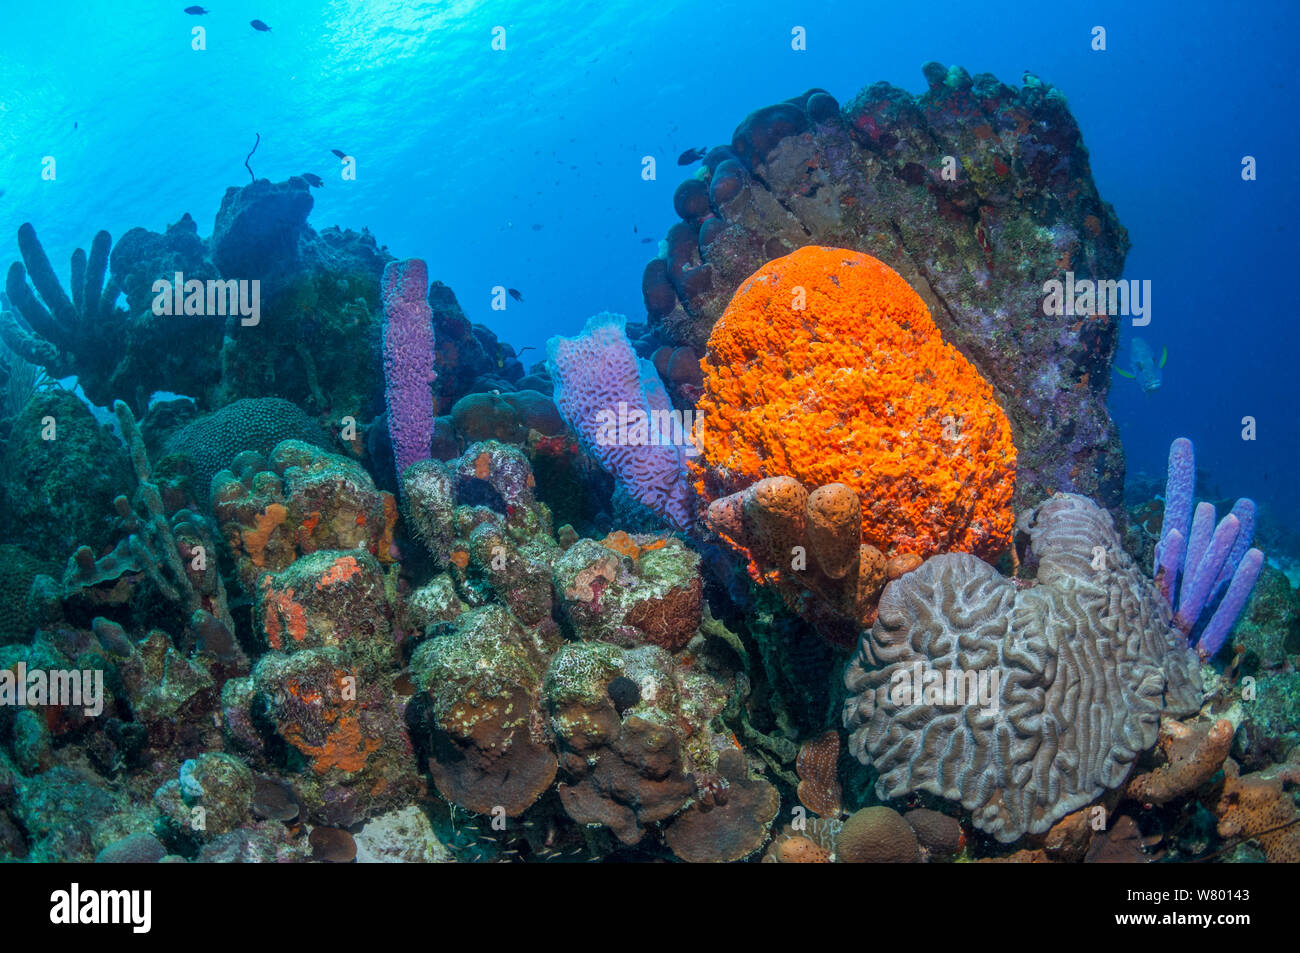 Coral reef paesaggi con Orange a orecchio di elefante (spugna Agelas clathrodes), Stufa-pipe spugna (Aplysina archeri) e vaso azzurro spugna (Callyspongia plicifera) Bonaire, Antille olandesi, dei Caraibi e Oceano Atlantico. Foto Stock